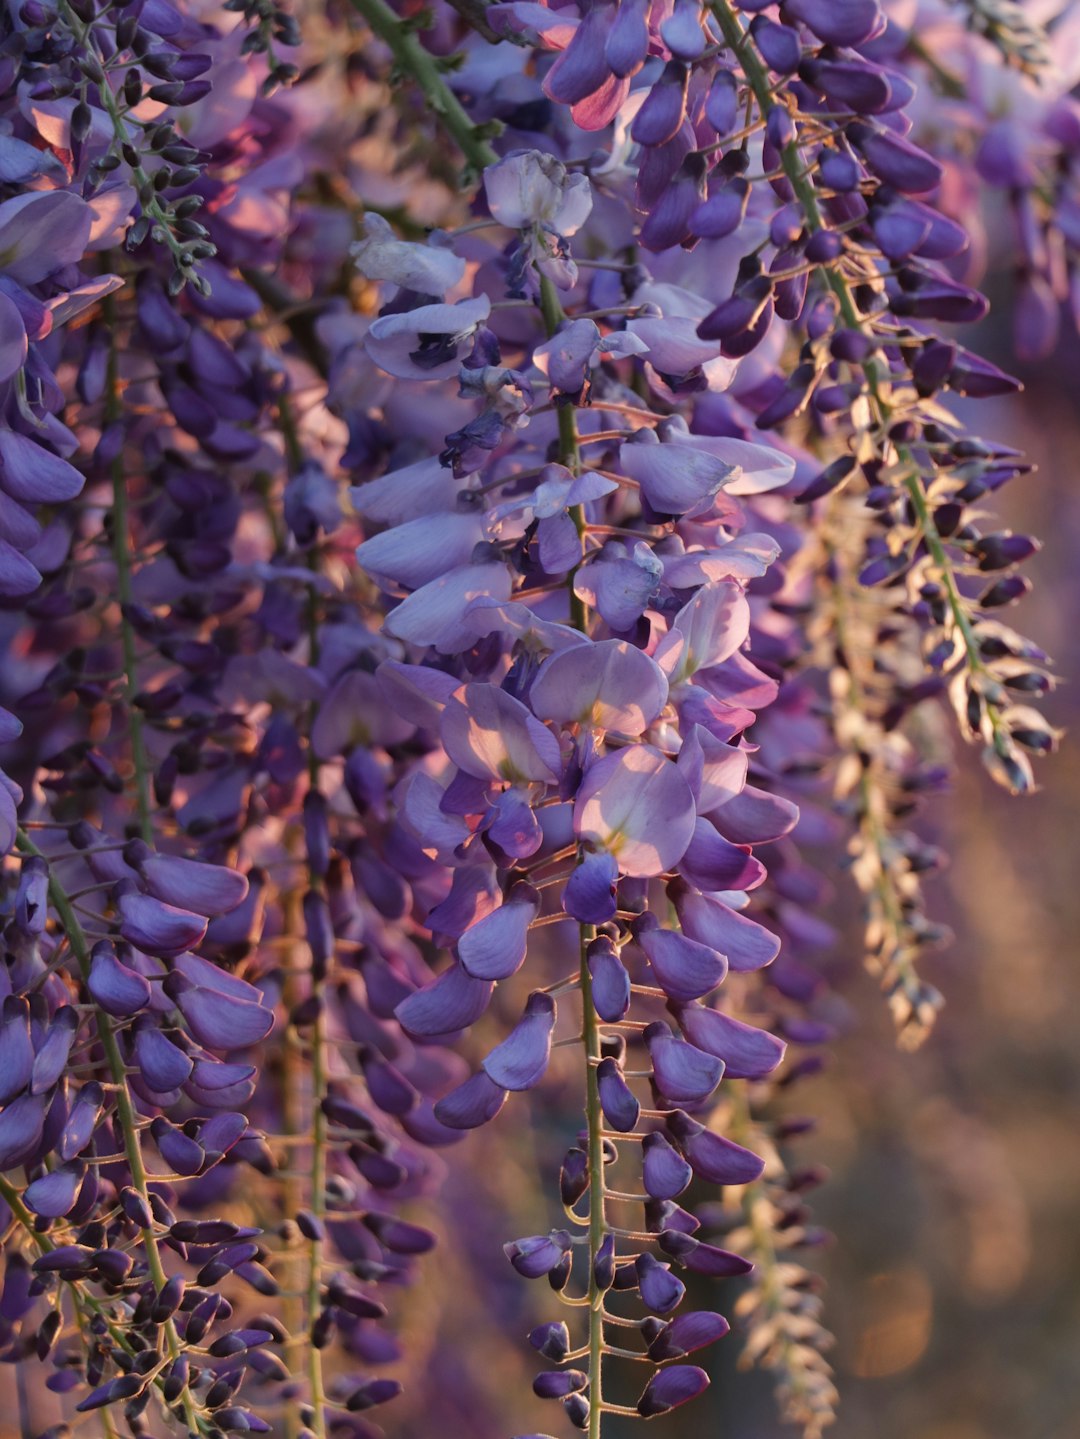 purple and white flowers in tilt shift lens